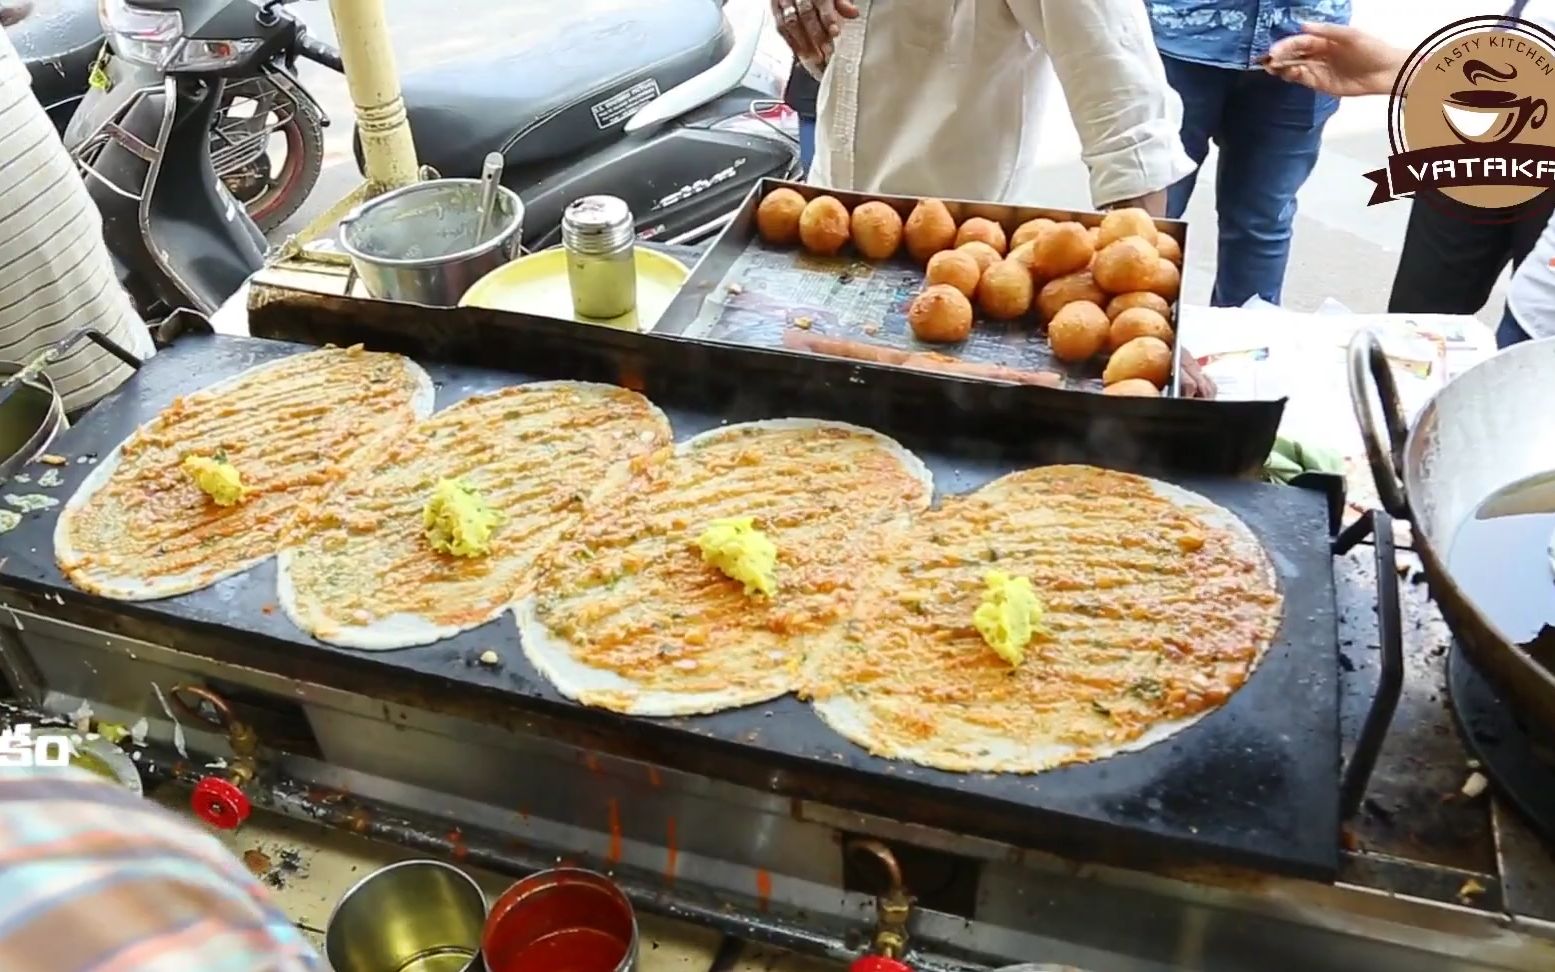 【印度糊糊】印度早餐美味,四份玛萨拉薄饼 印度街头美食